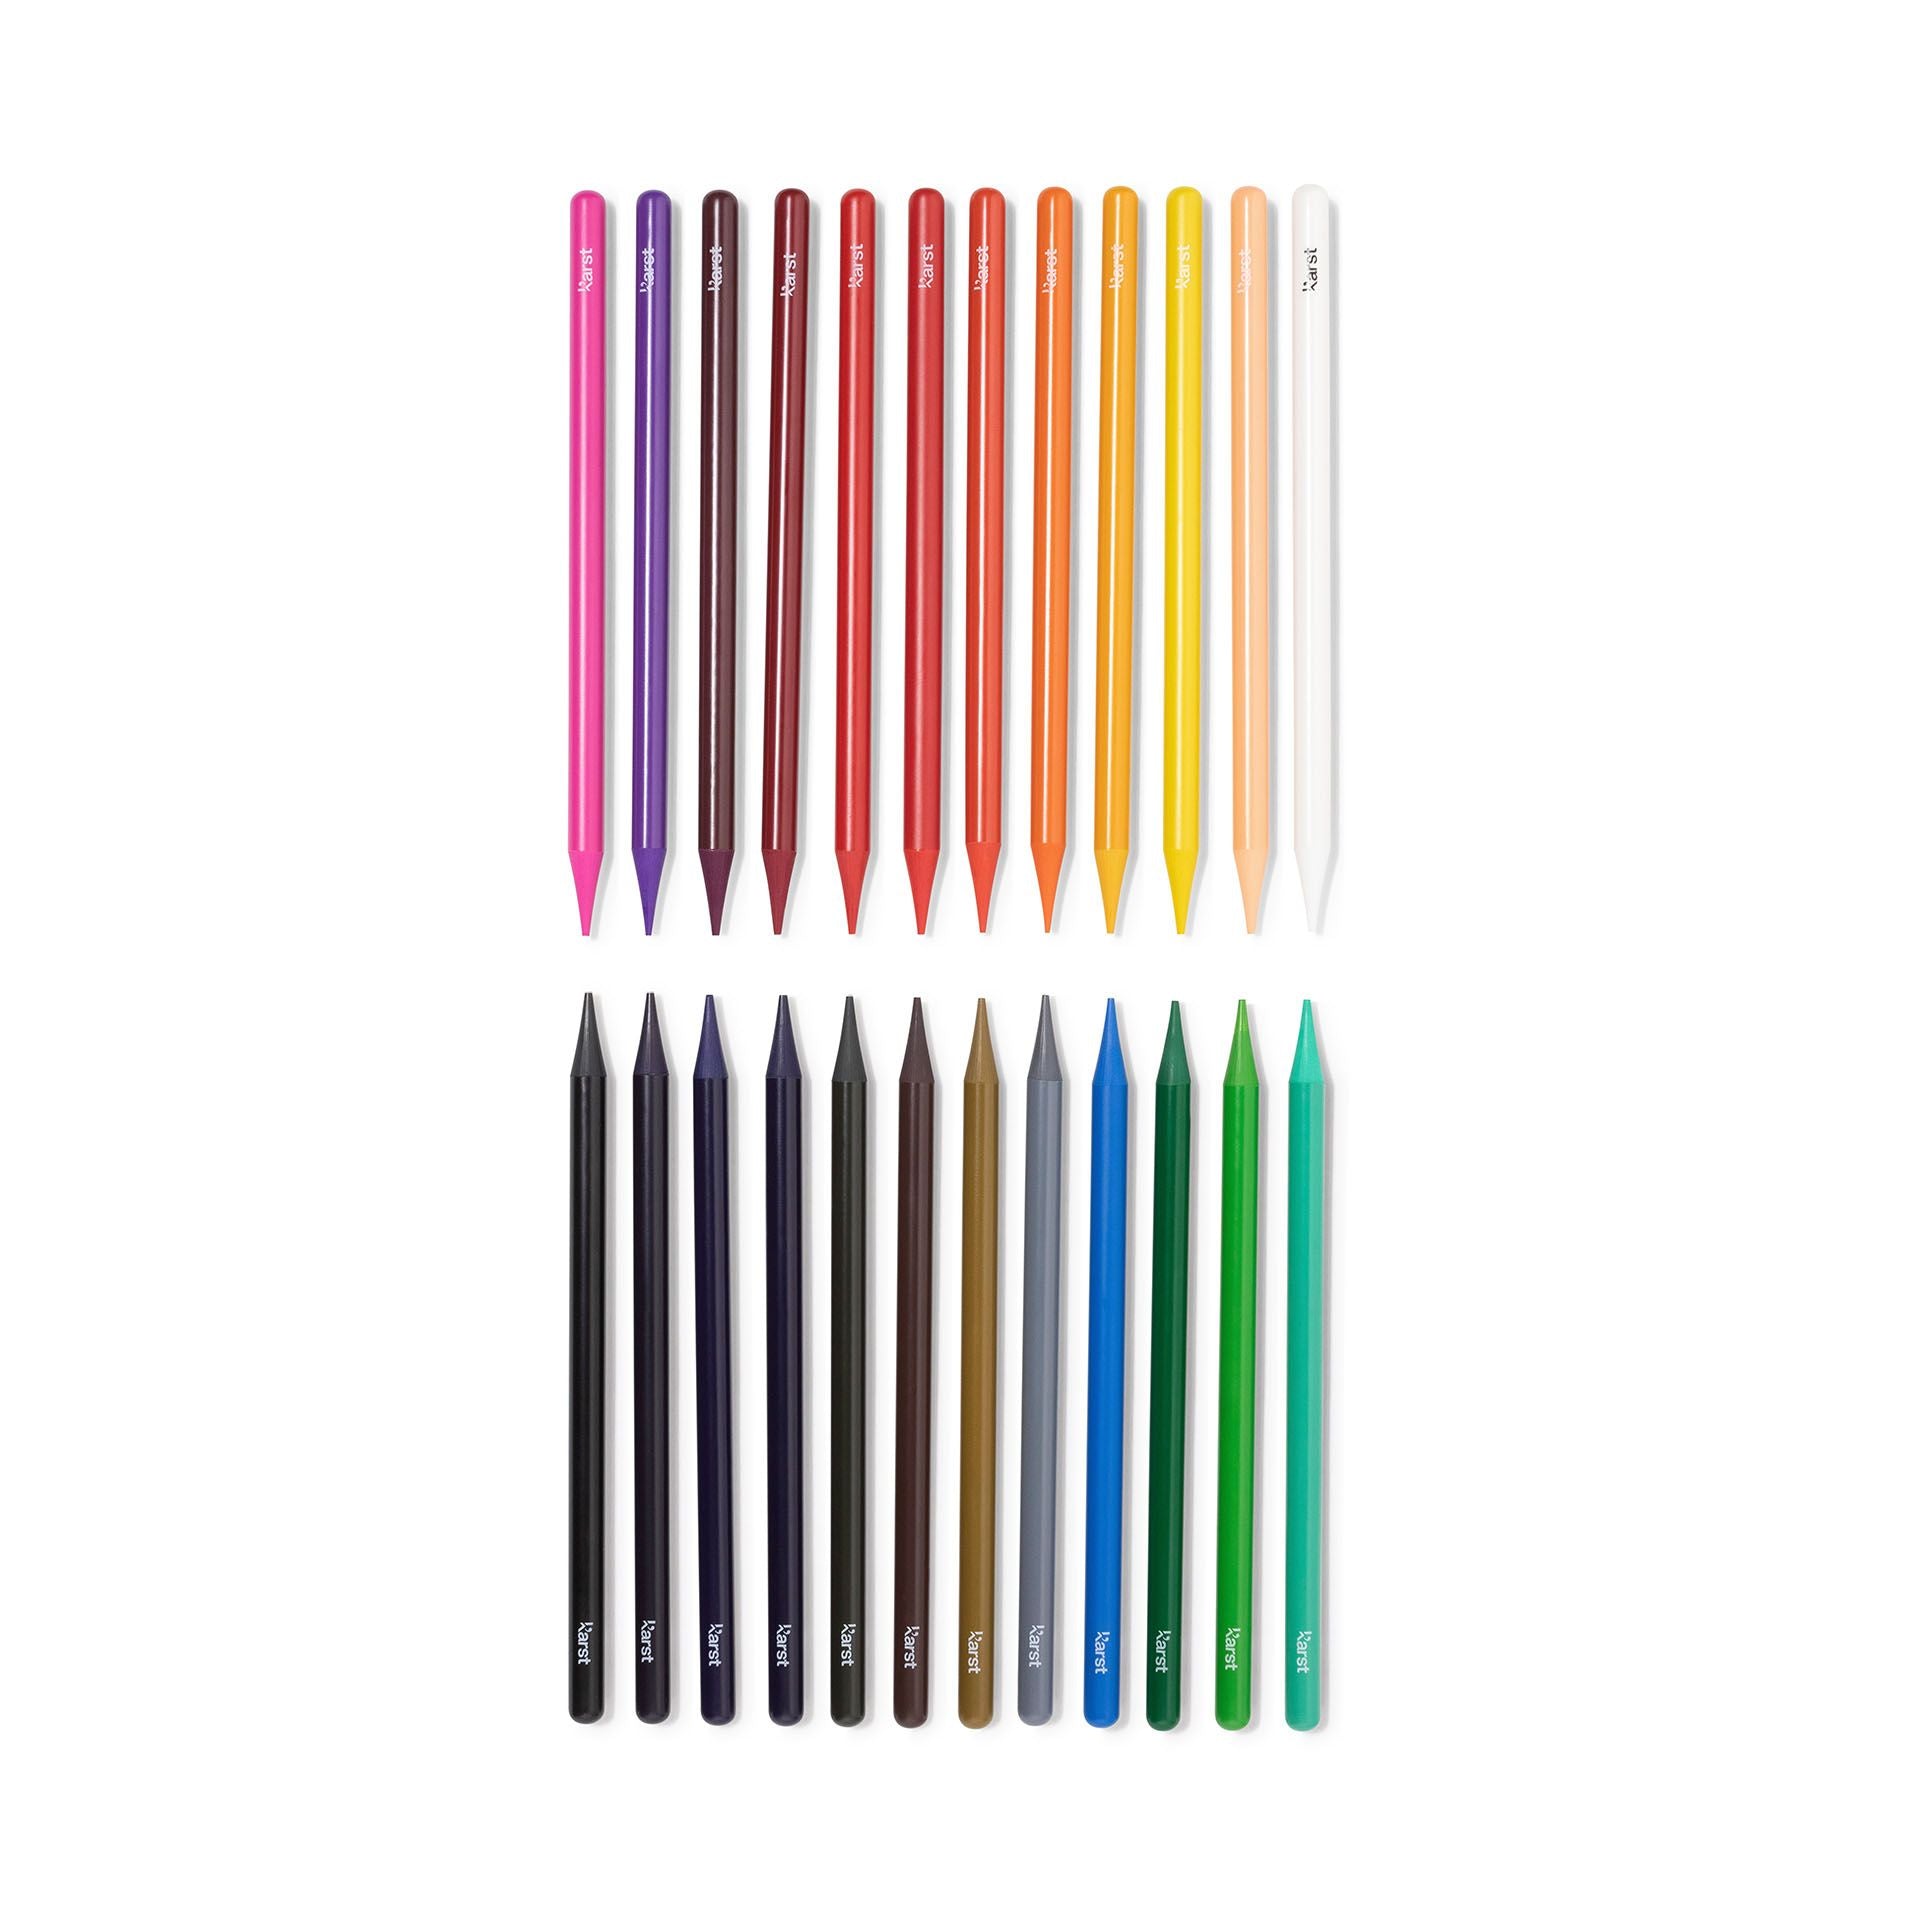 Karst | Woodless Artist Pencils - Set of 24